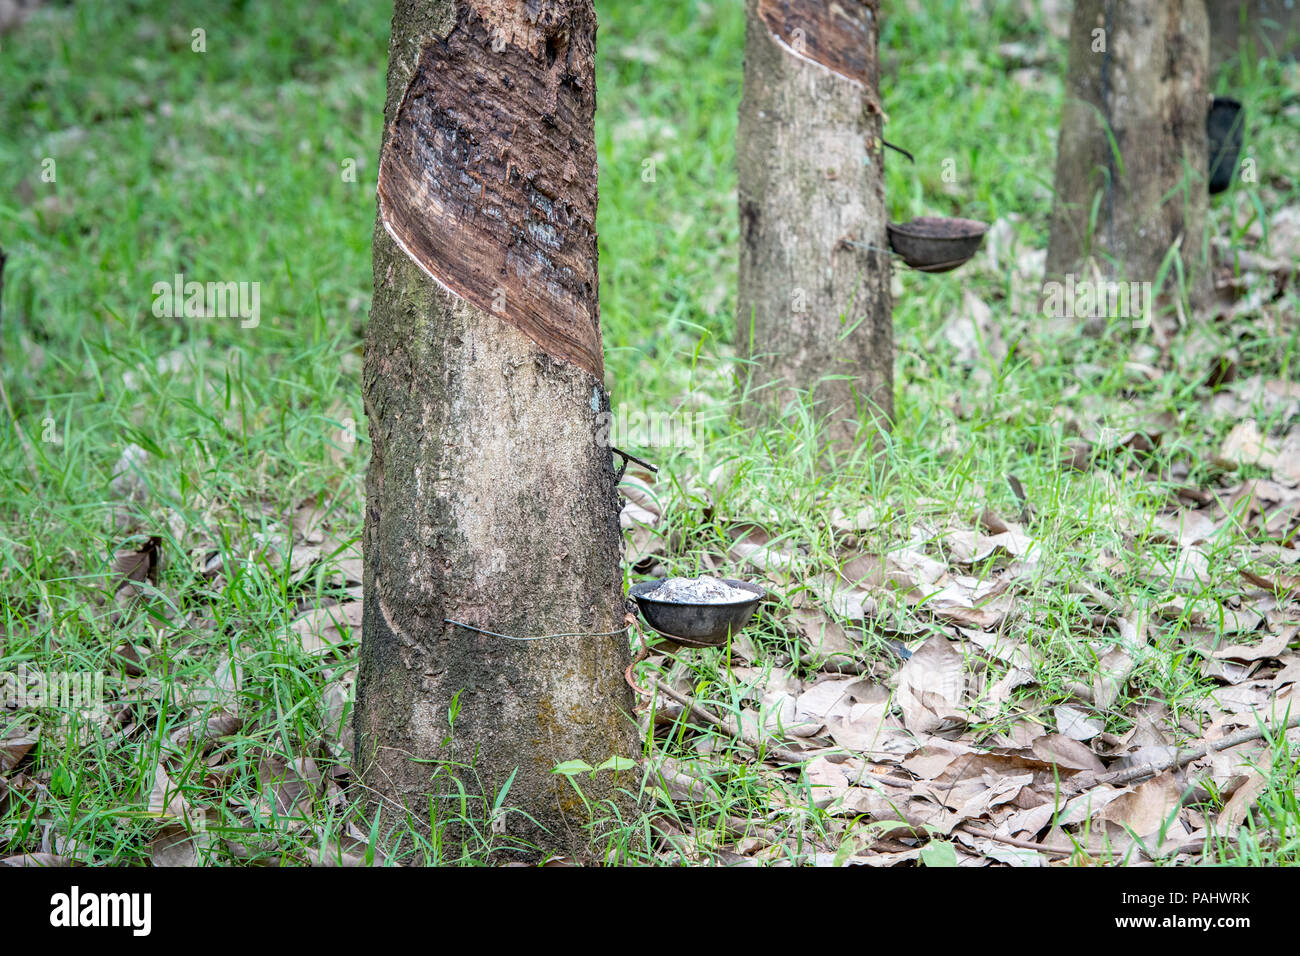 Bol attaché à arbre à caoutchouc (Hevea brasiliensis) perçoit comme il coule vers le bas en latex incision dans arbre, République de Guinée Banque D'Images